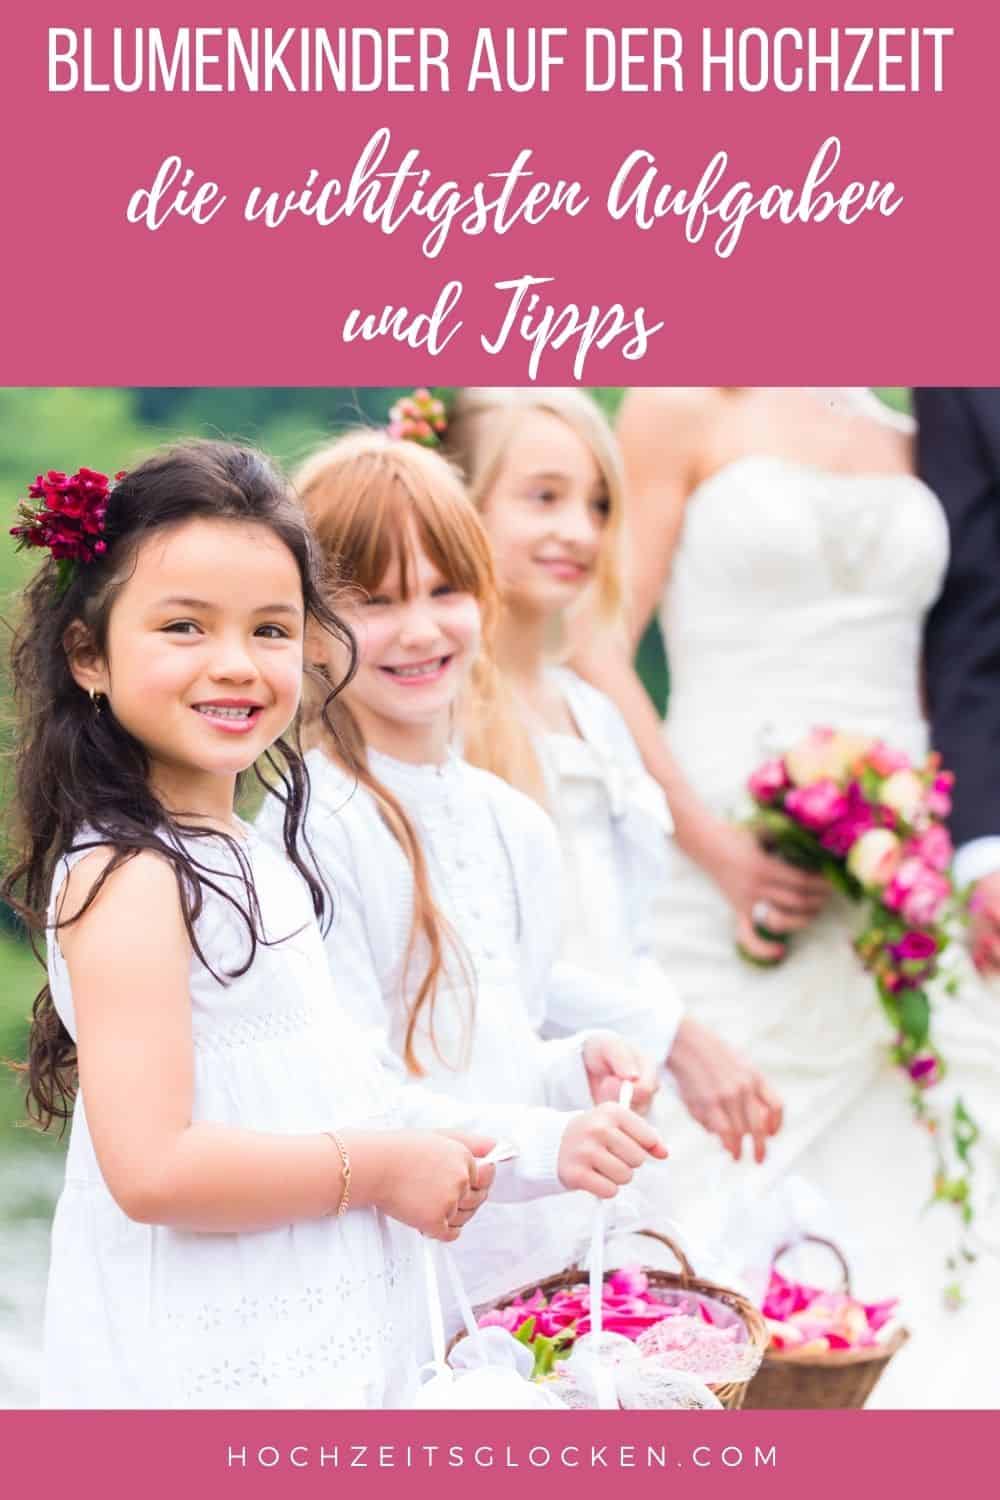 Blumenkinder auf der Hochzeit - die wichtigsten Aufgaben und Tipps pinterest